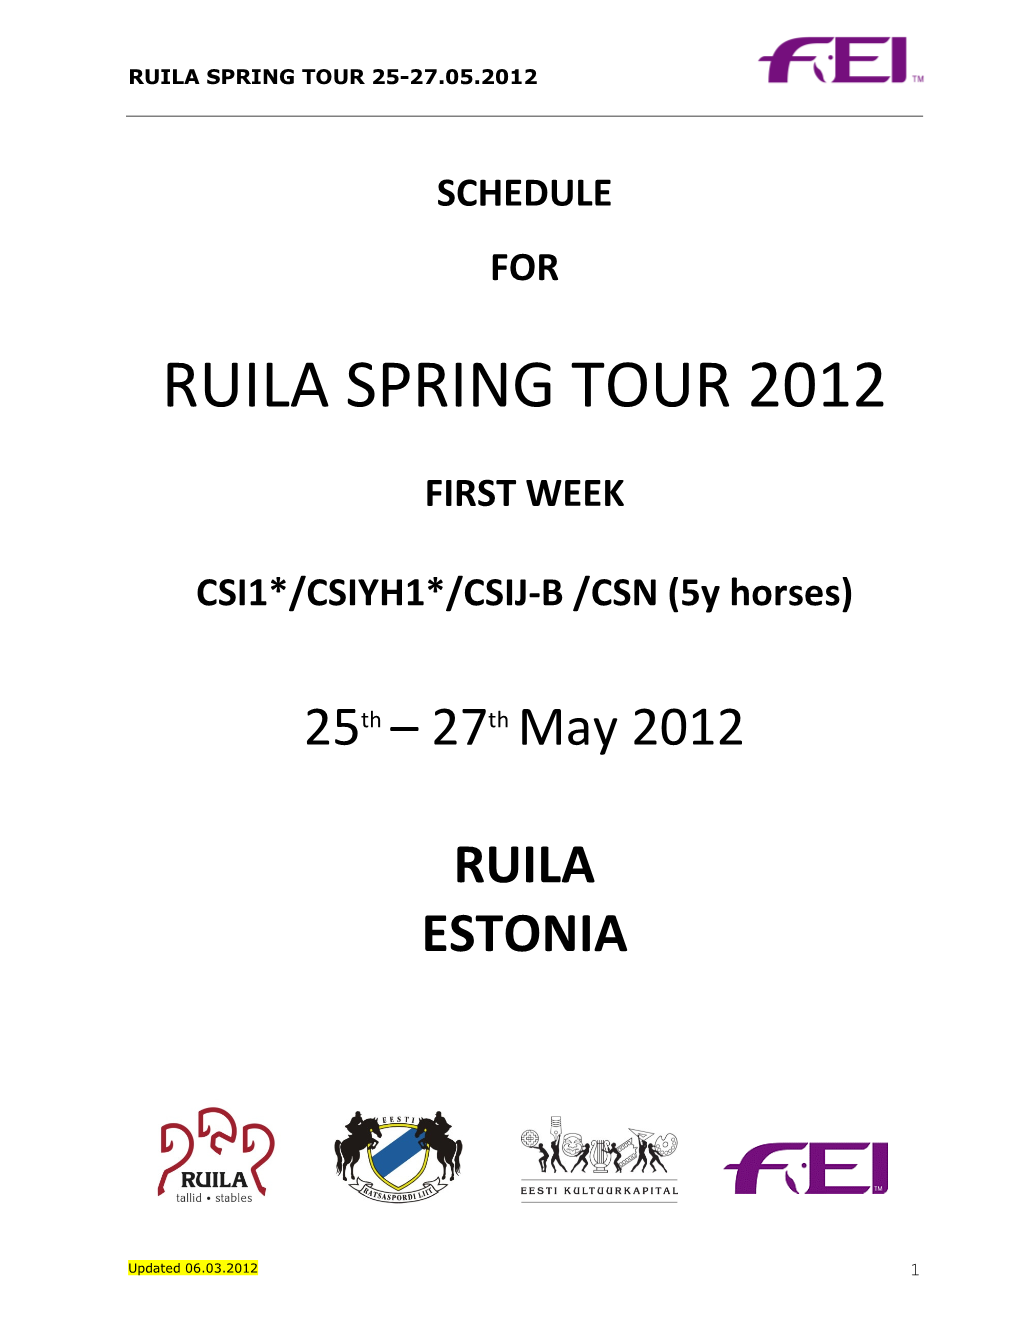 Ruila Spring Tour 2012